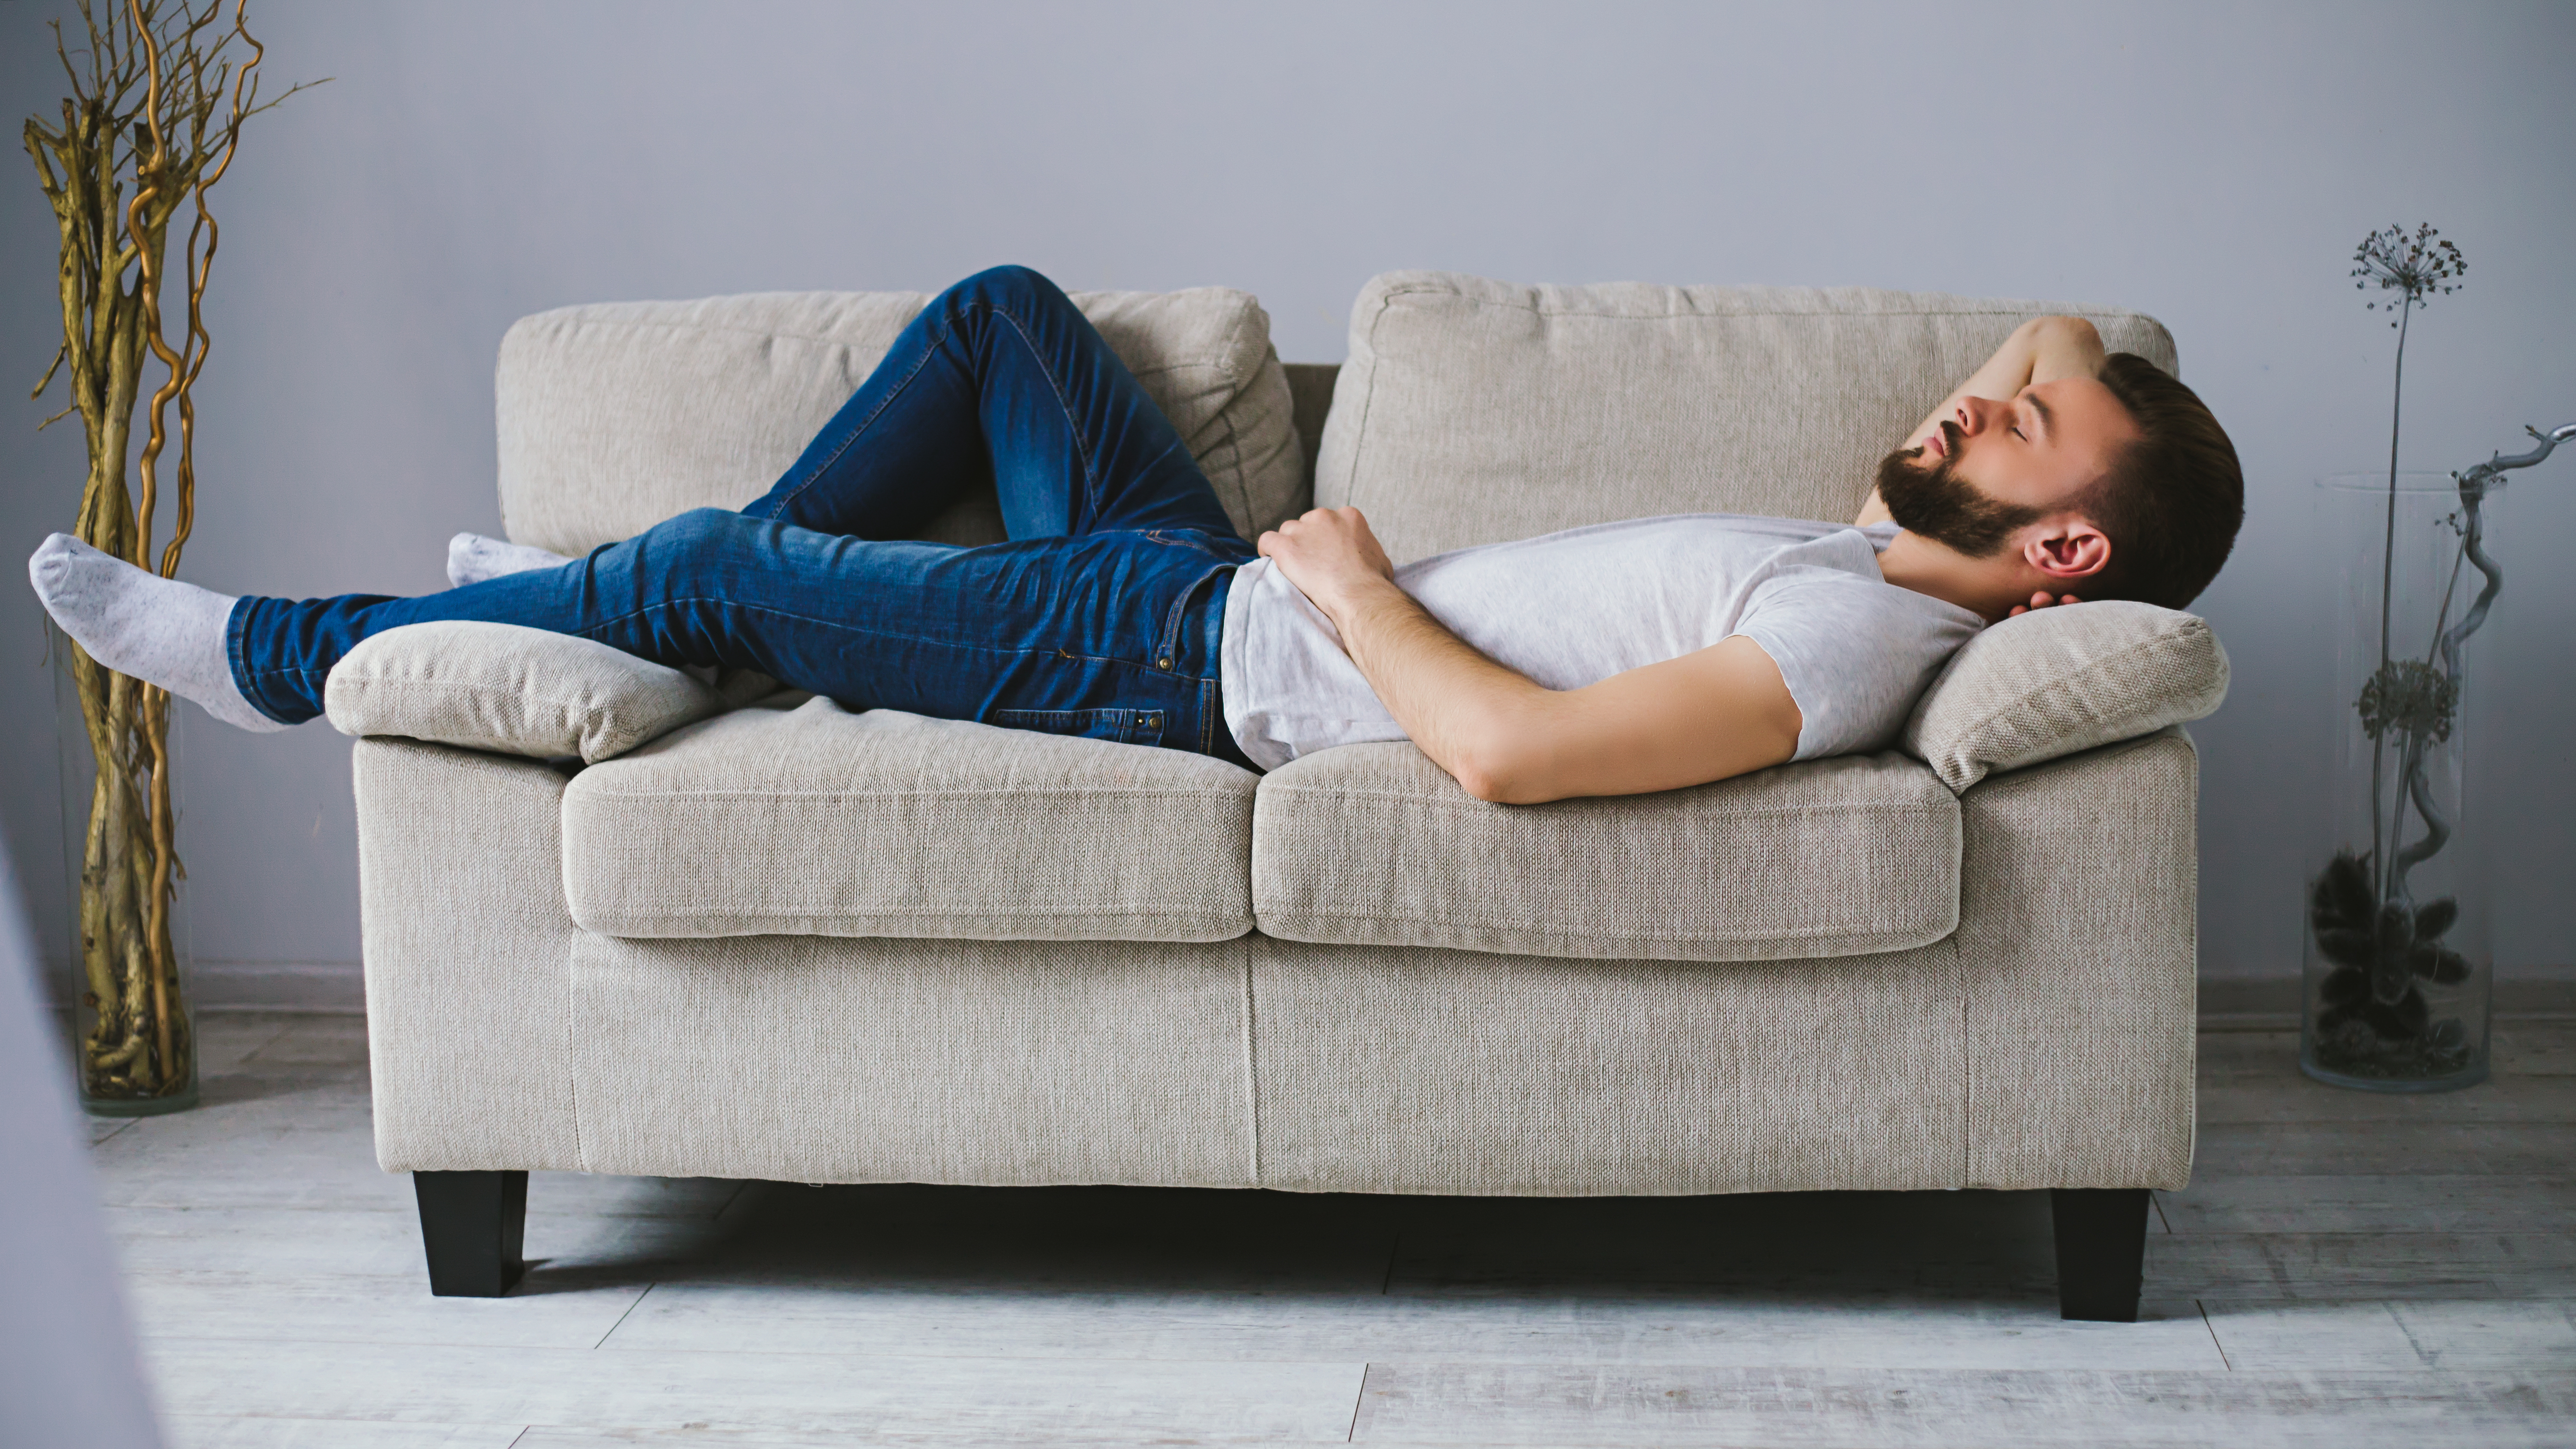 Ein Mann schläft auf einer Couch | Quelle: Shutterstock